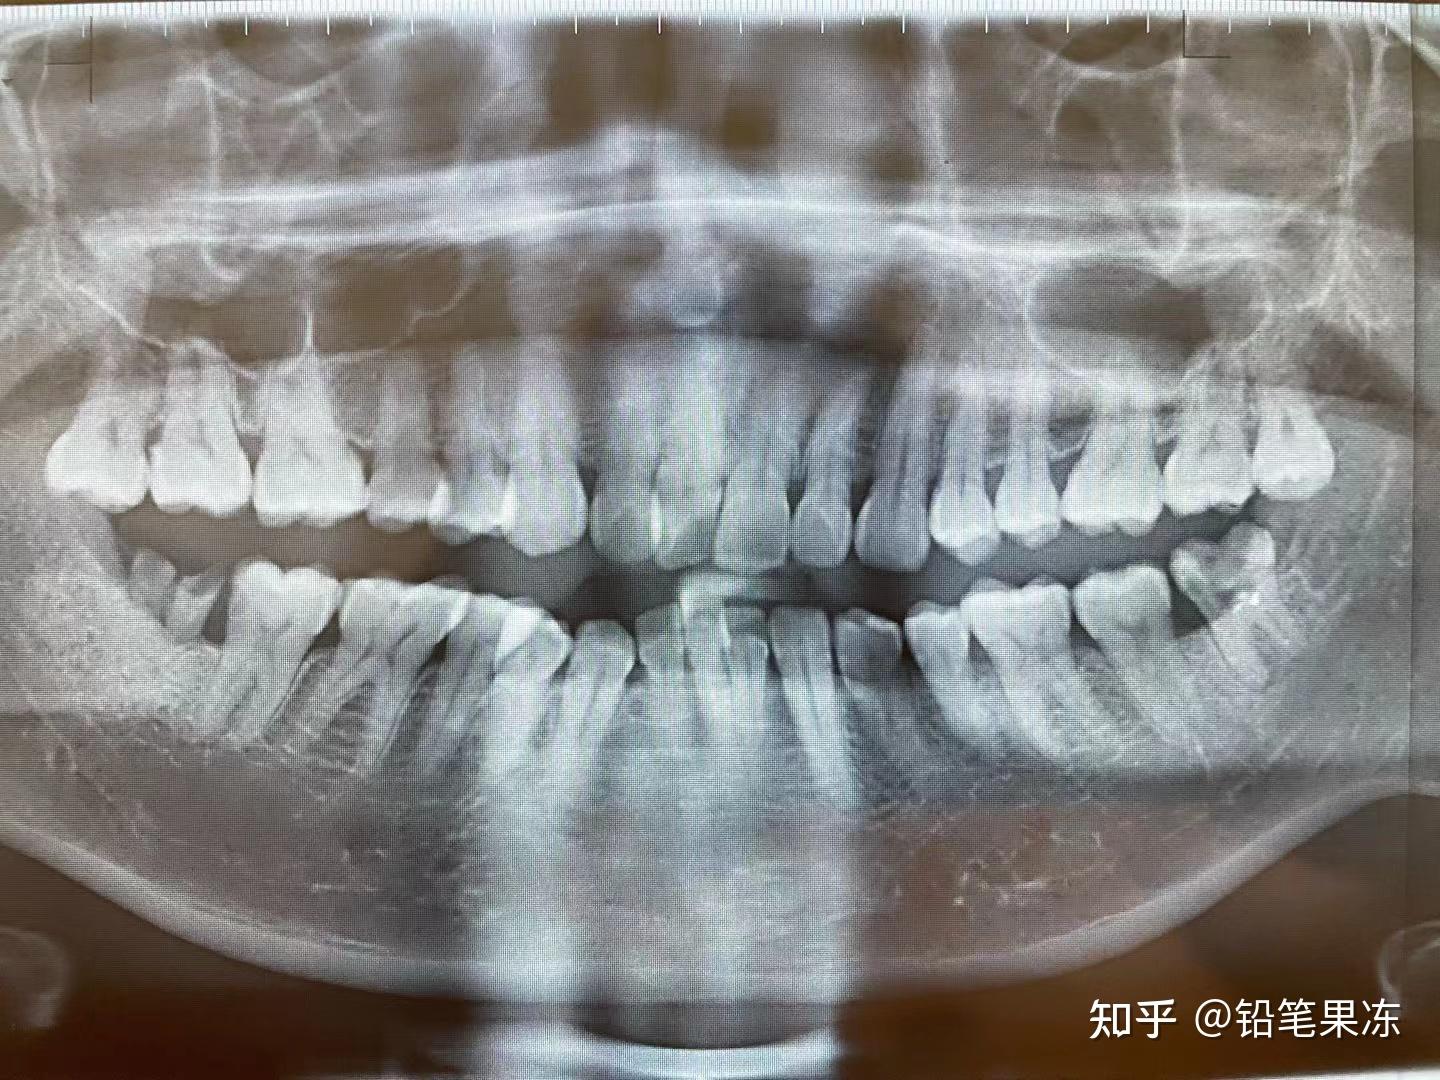 1个牙缝有问题，2颗牙齿被牵连——邻面龋修补 - 知乎